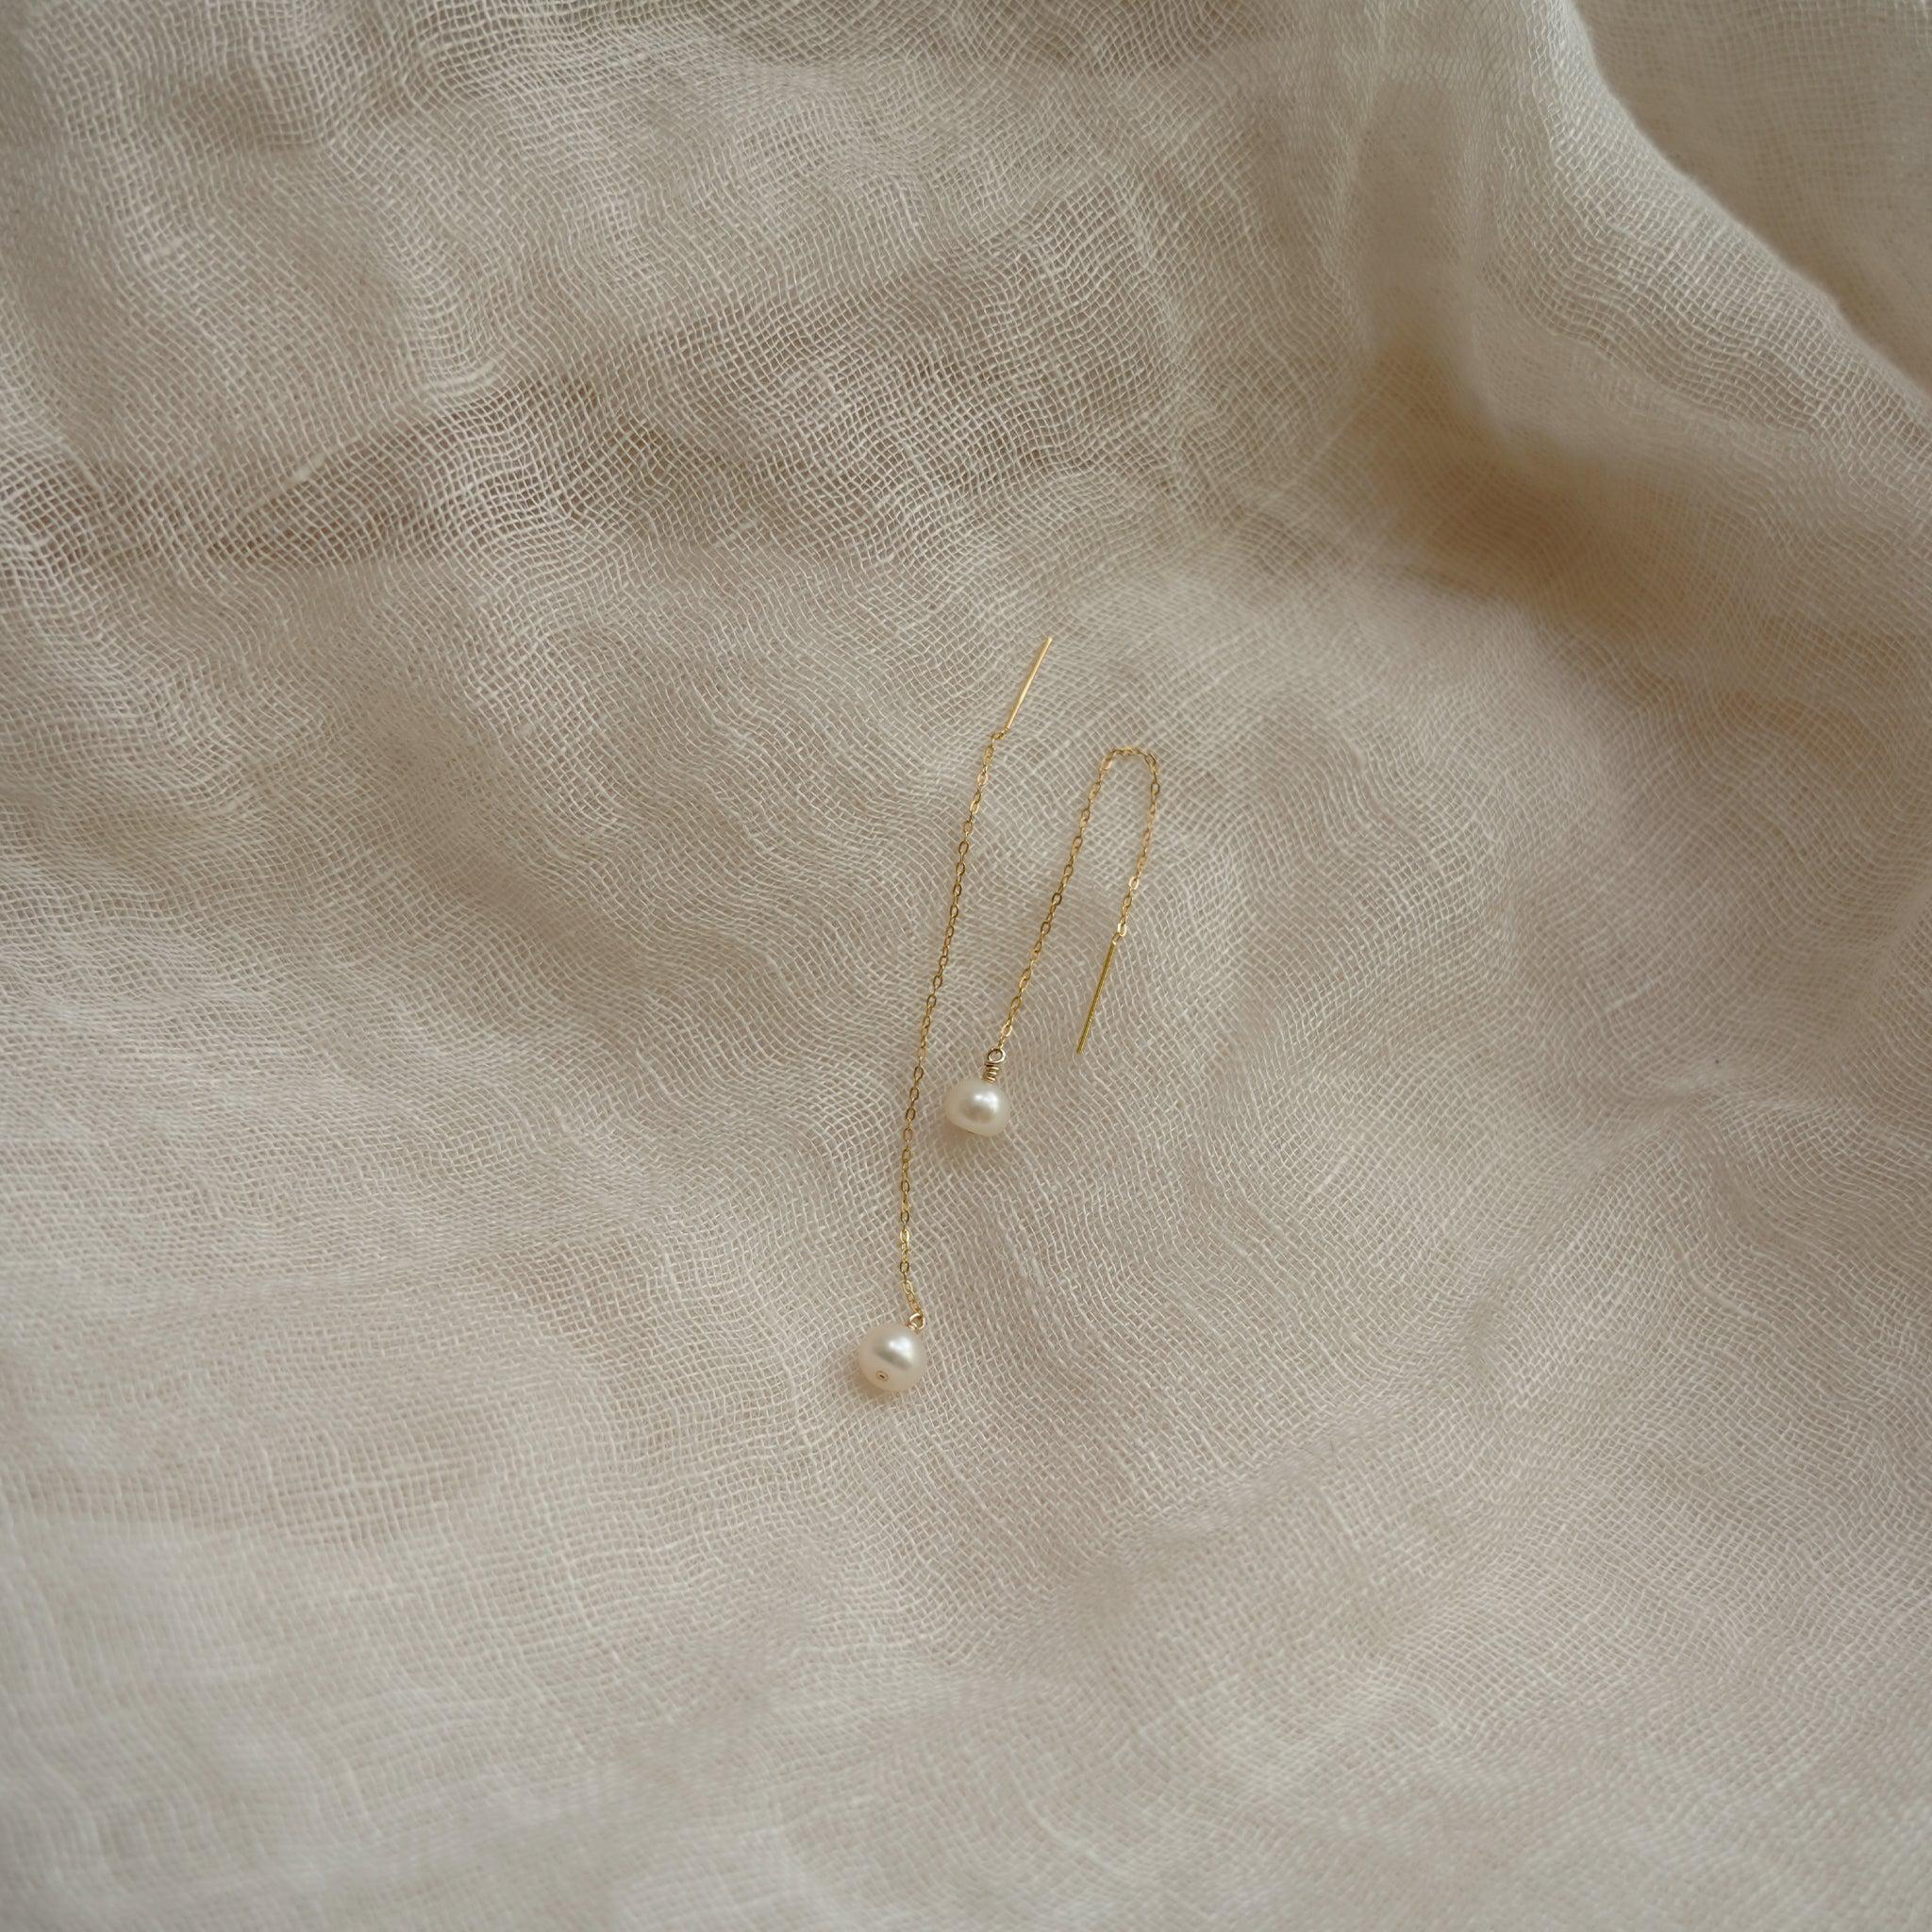 Long Drop Pearl Earrings